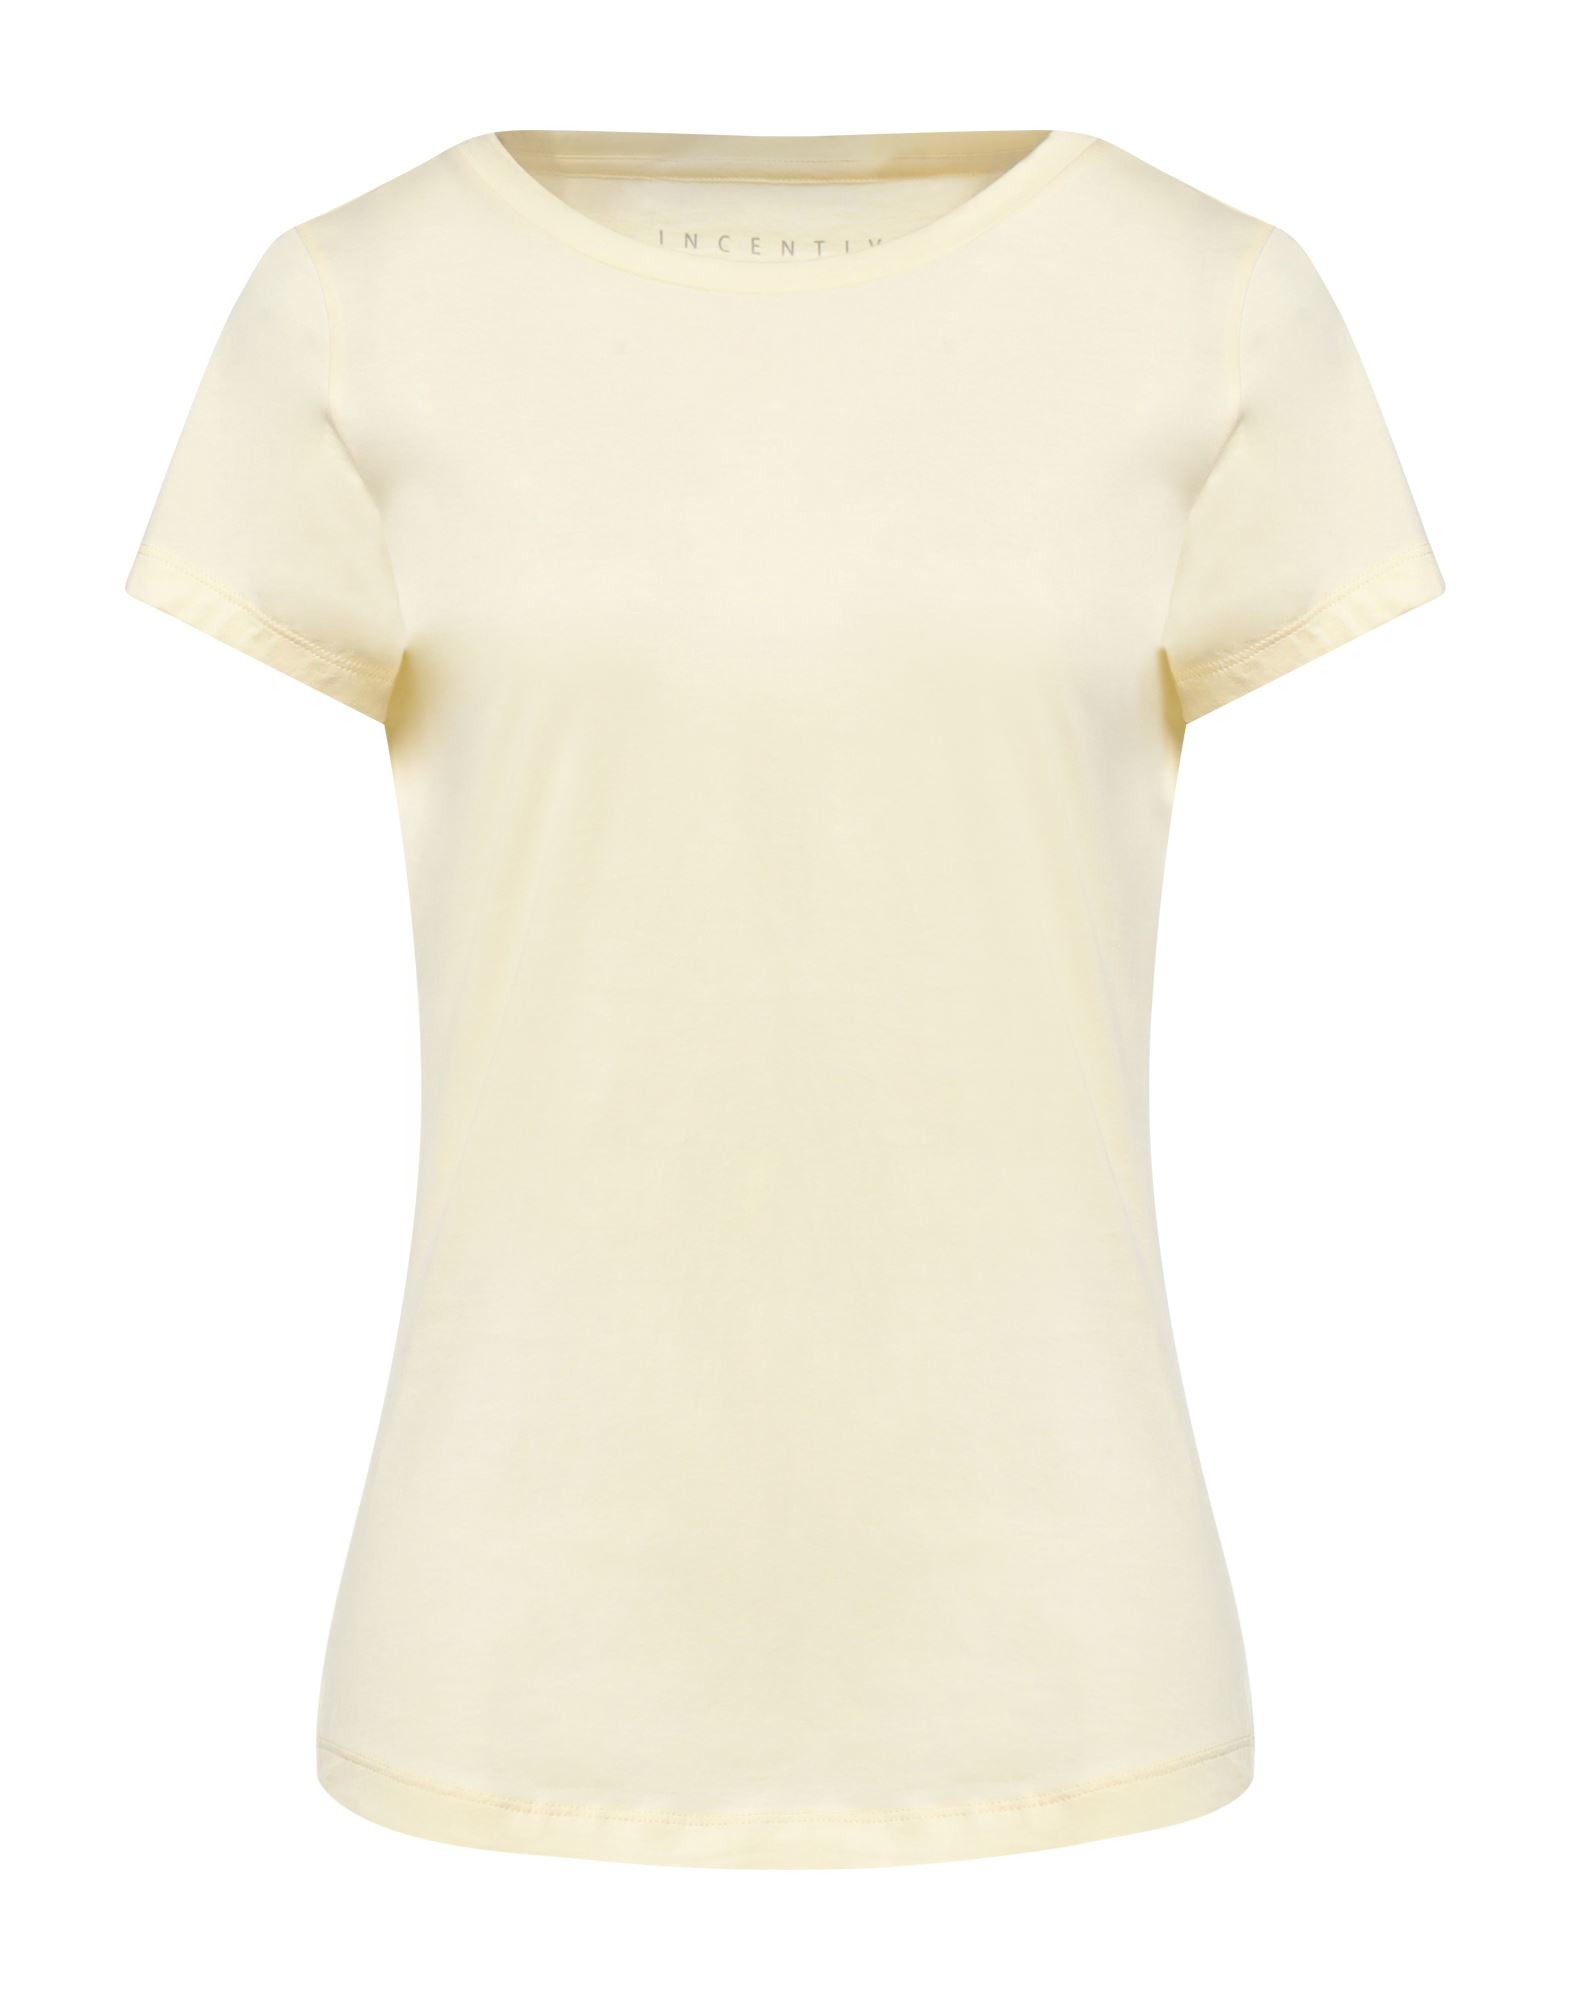 Incentive! Woman T-shirt Light Yellow Size Xxl Organic Cotton